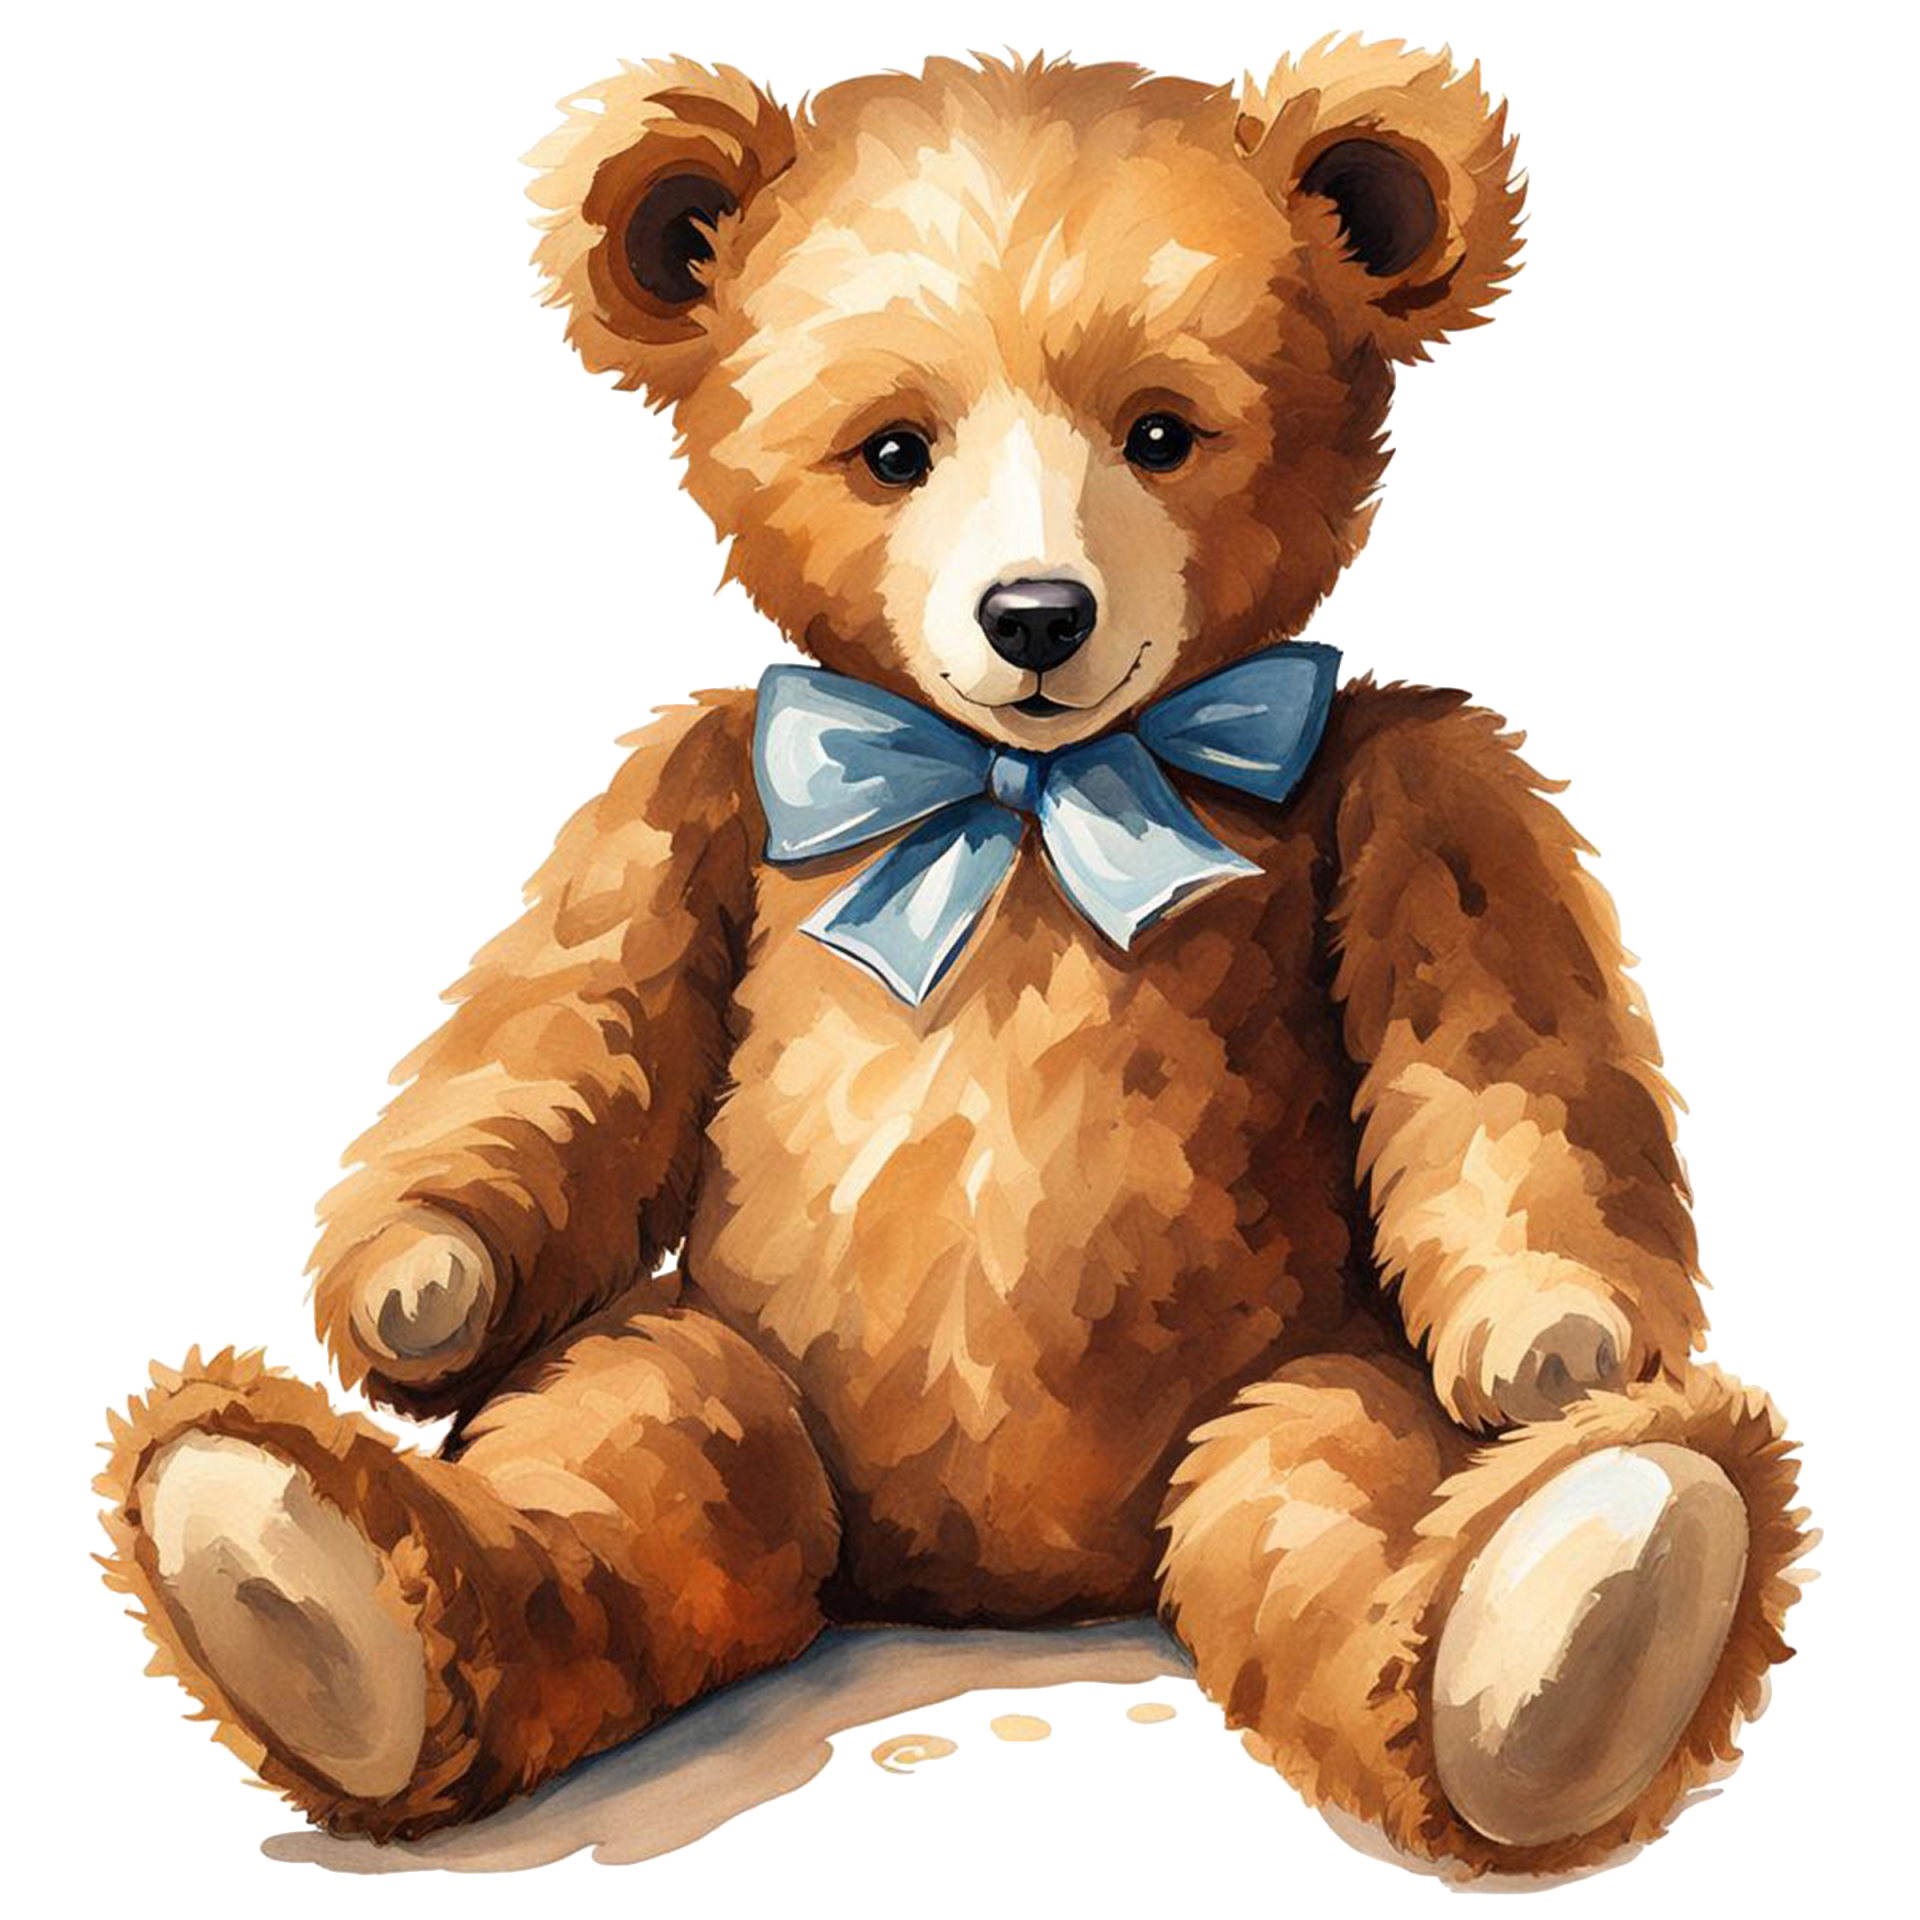 Vintage Teddy Bear Clipart